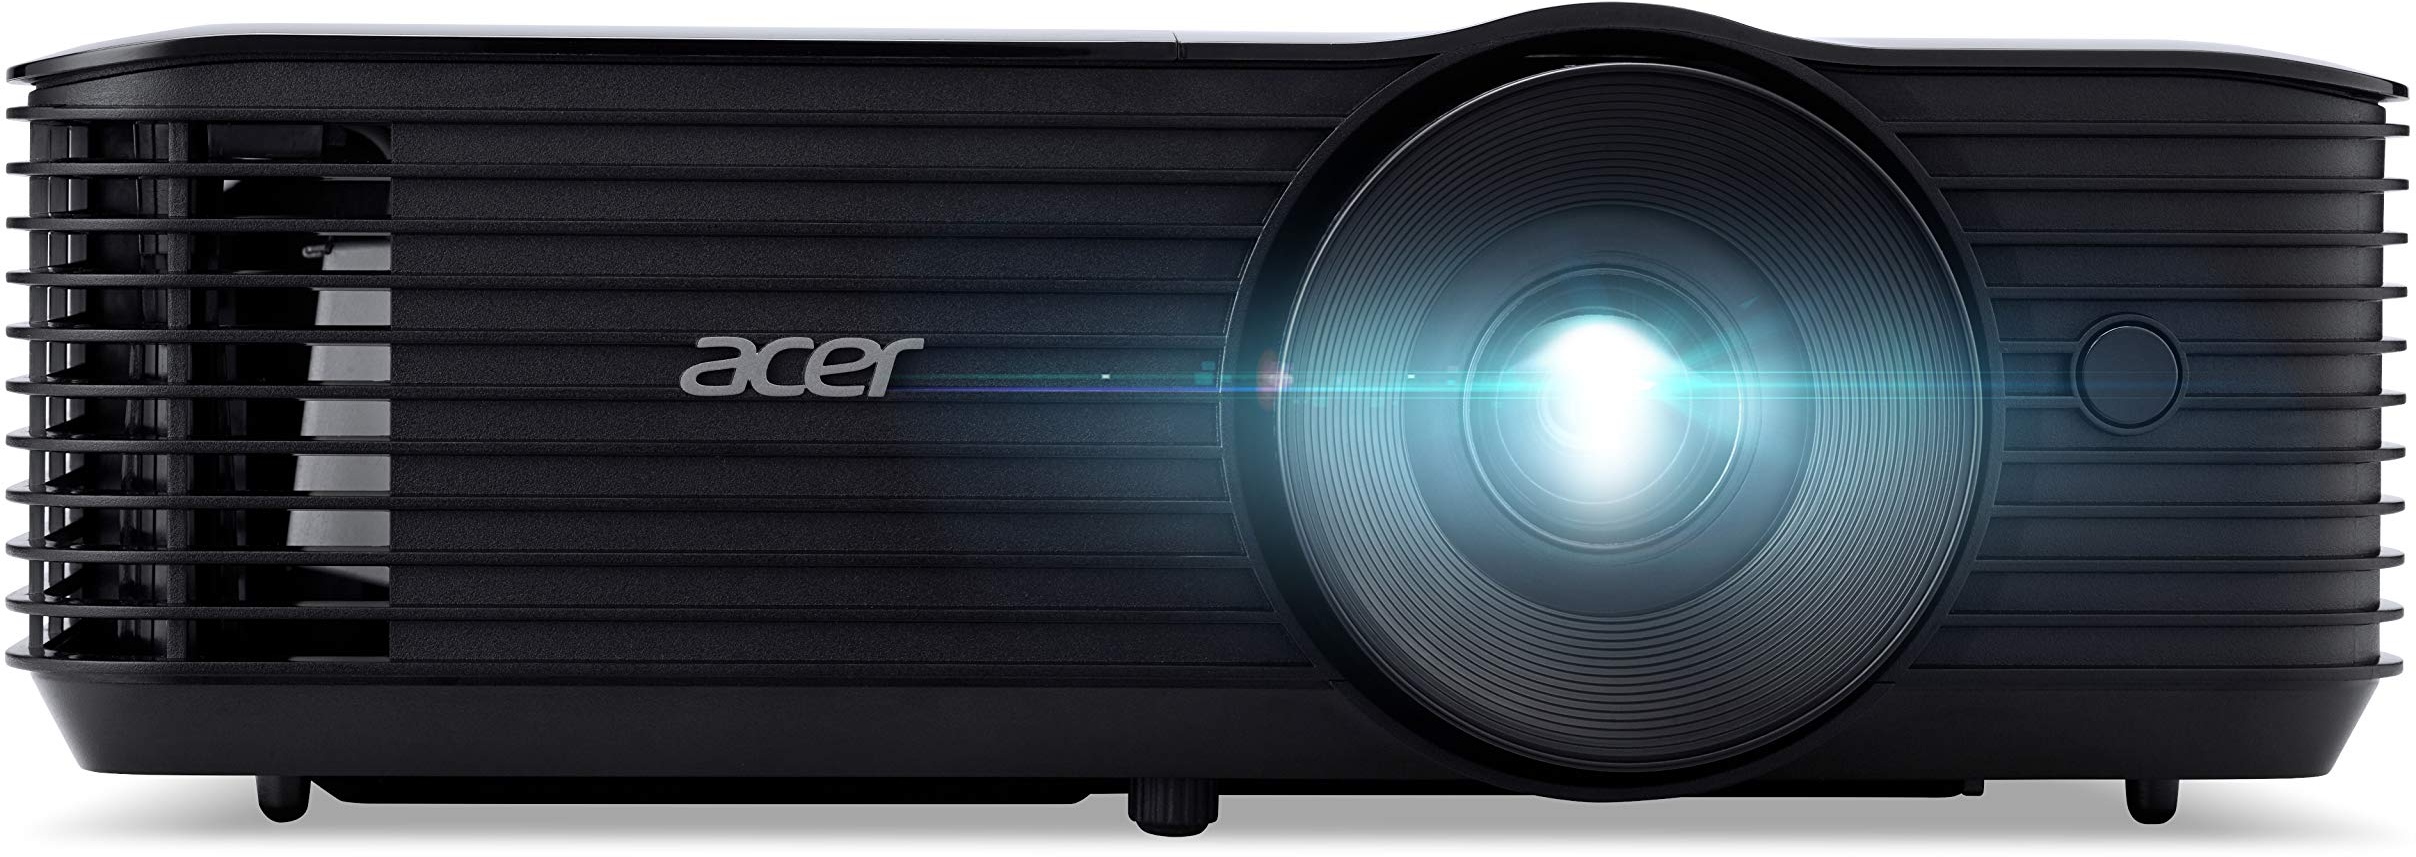 Acer X118HP DLP Beamer (SVGA (800 x 600 Pixel) 4.000 ANSI Lumen, 20.000:1 Kontrast, 3D, Keystone, 3 Watt Lautsprecher, HDMI (HDCP), Audio Anschluss) Home Cinema / Business